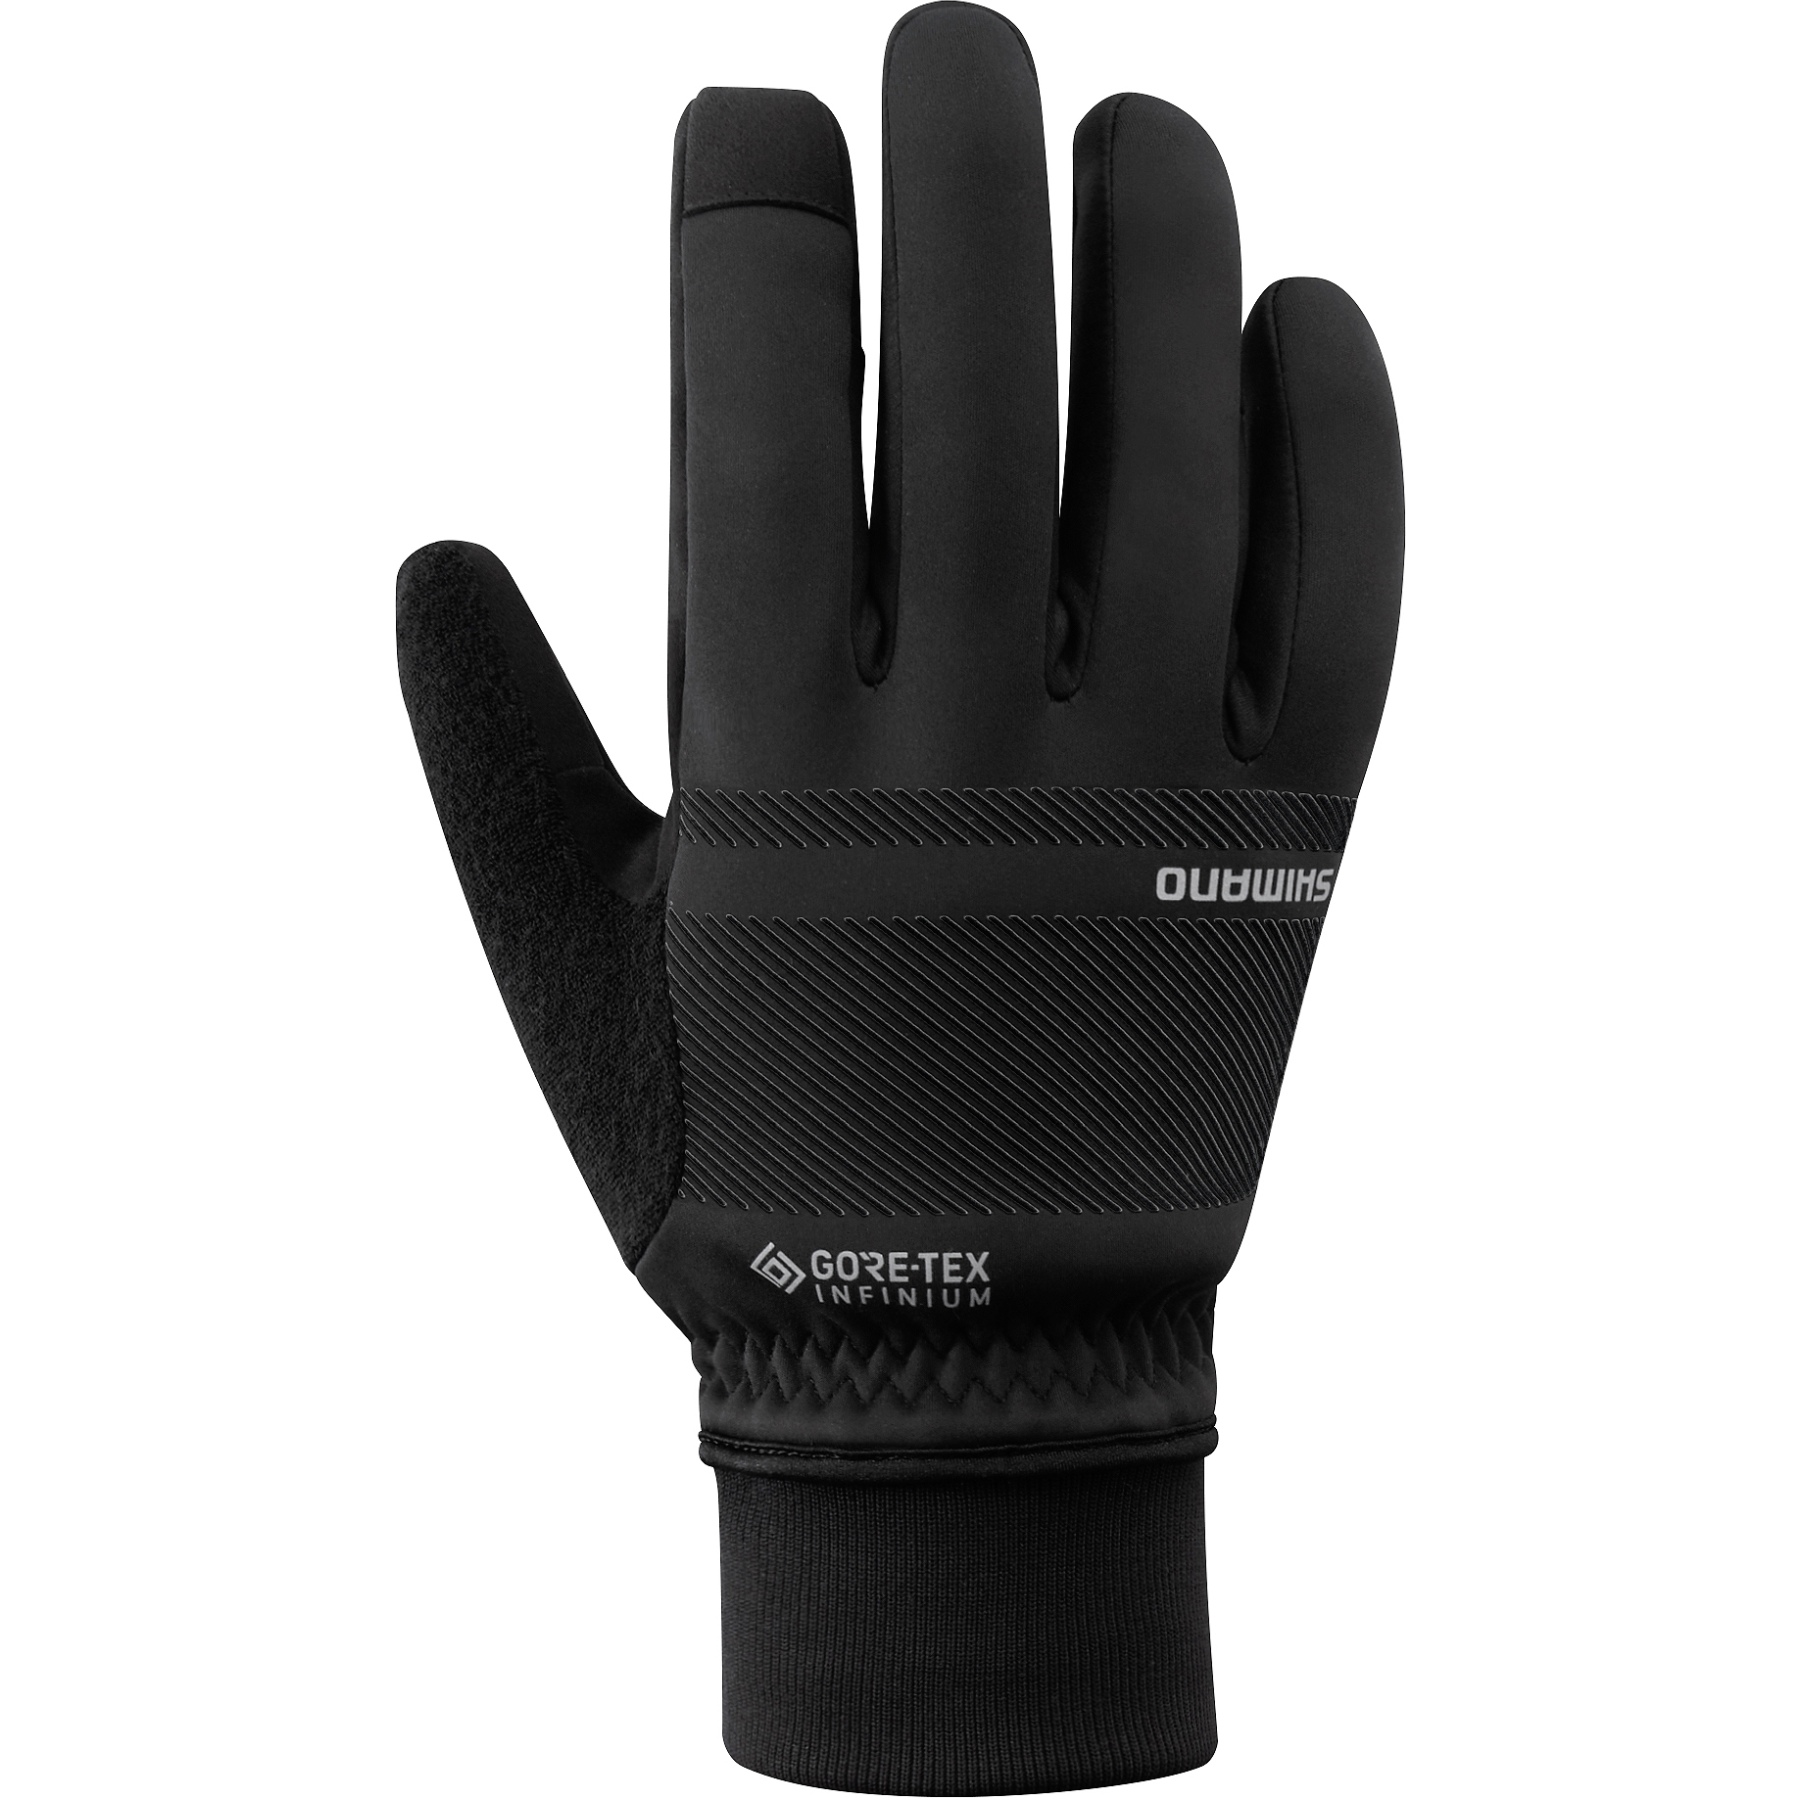 Produktbild von Shimano Infinium Primaloft Handschuhe Herren - black